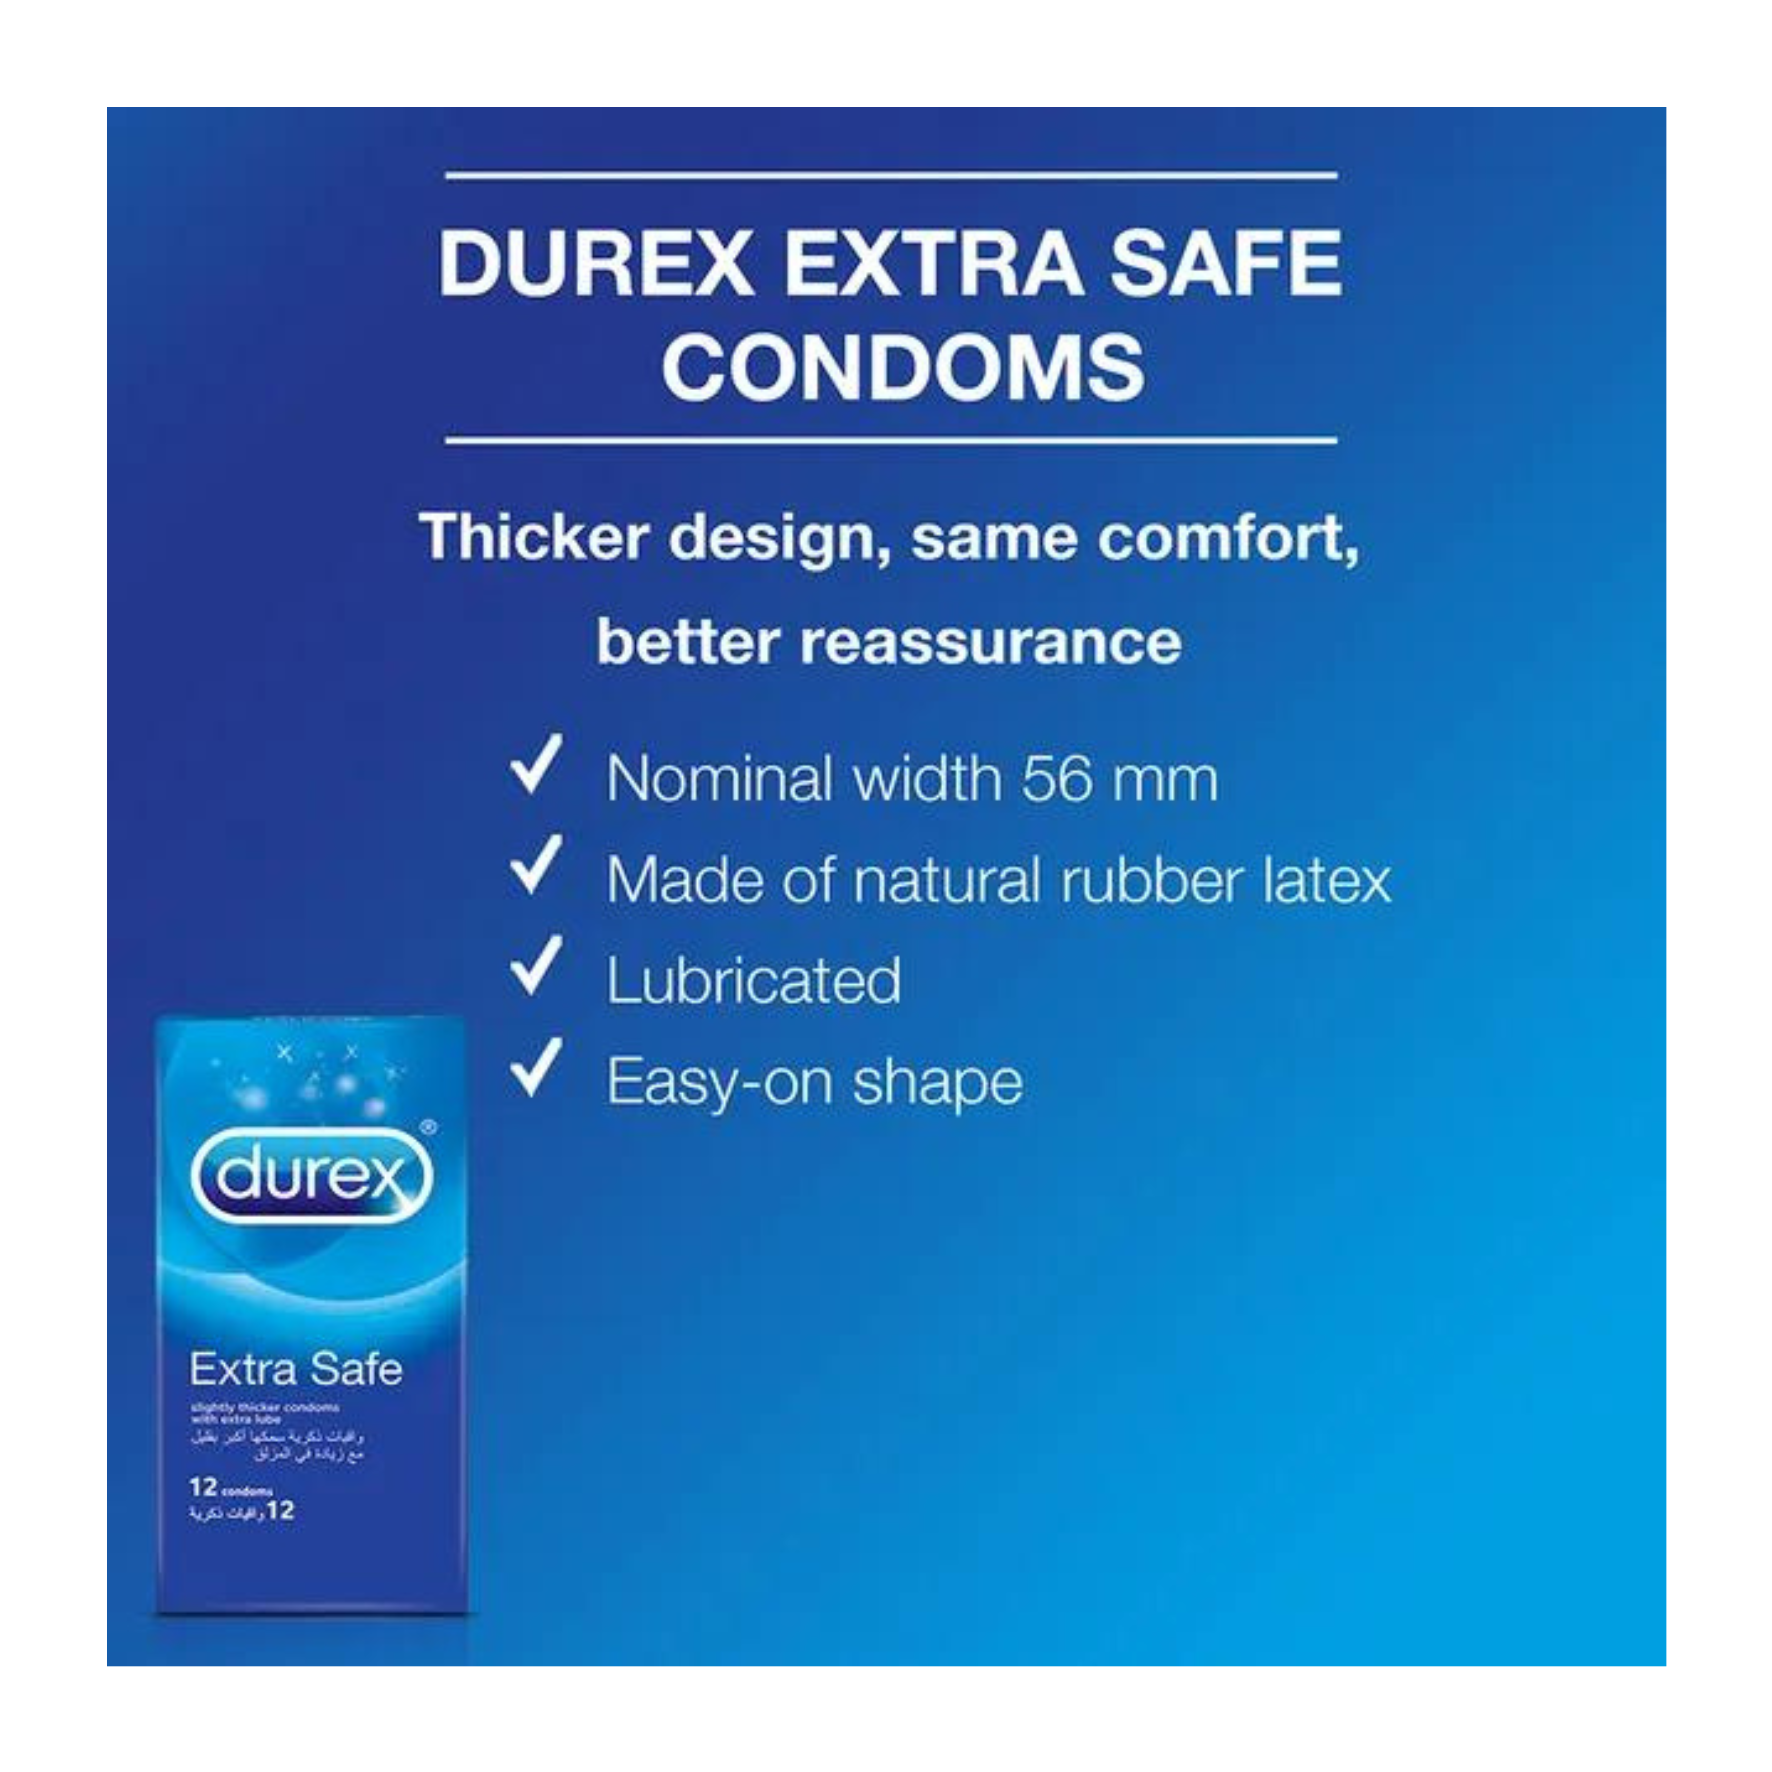 PREZERVATYVAI SUTEIKIANTYS MAKSIMALIĄ APSAUGĄ "DUREX EXTRA SAFE"  
"Durex Extra Safe" tai  skaidrūs ir lubrikuoti  prezervatyvai skirti  saugiai ir jausmingai patirčiai.  
  
Šie prezervatyvai sukurti iš šiek tiek storesnio latekso ir papildomai lubrikuoti, tad  seksas bus malonus bei saugus.  
Prieš užsidėdami prezervatyvą įsitikinkite, kad jūsų varpa neliečia partnerio lytinių organų srities – sperma iš varpos gali išeiti dar prieš pilną ejakuliaciją.   
*Atminkite, kad nė viena kontraceptinė priemonė nėra 100 % veiksminga nuo nėštumo, ŽIV ar lytiškai plintančių infekcijų.